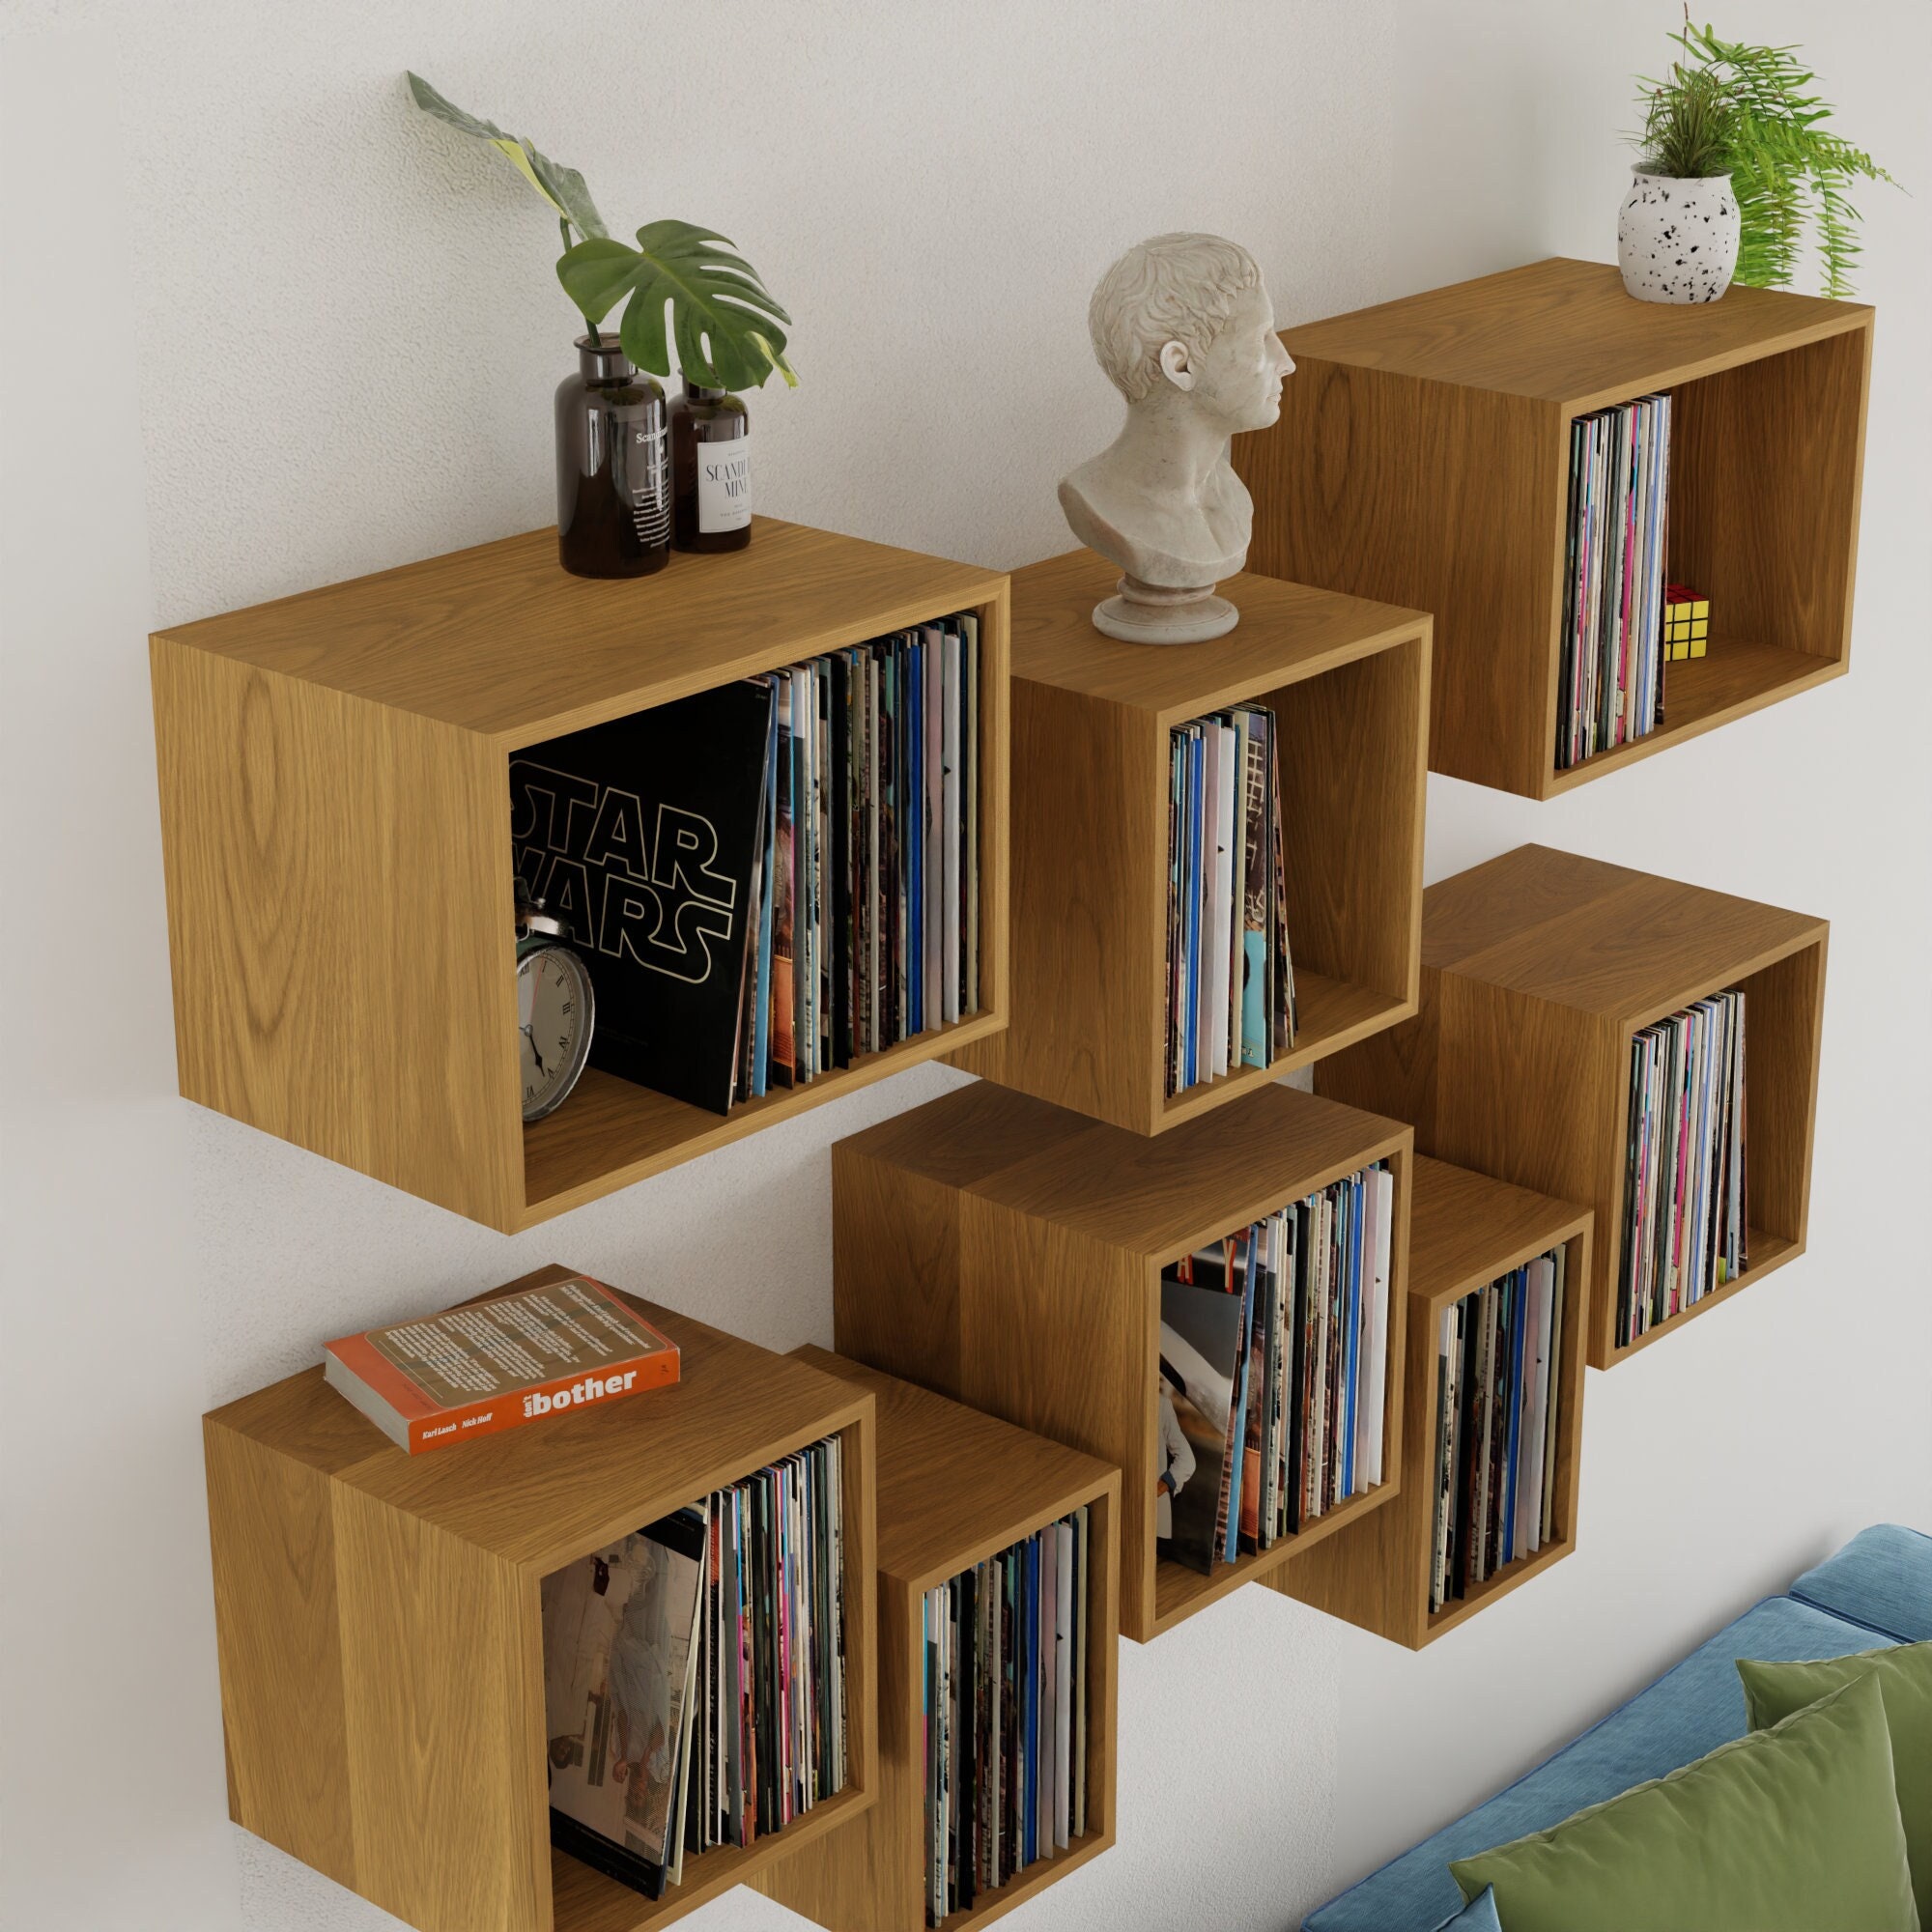 Solid wood cube shelves in walnut or oak - Nick James Design